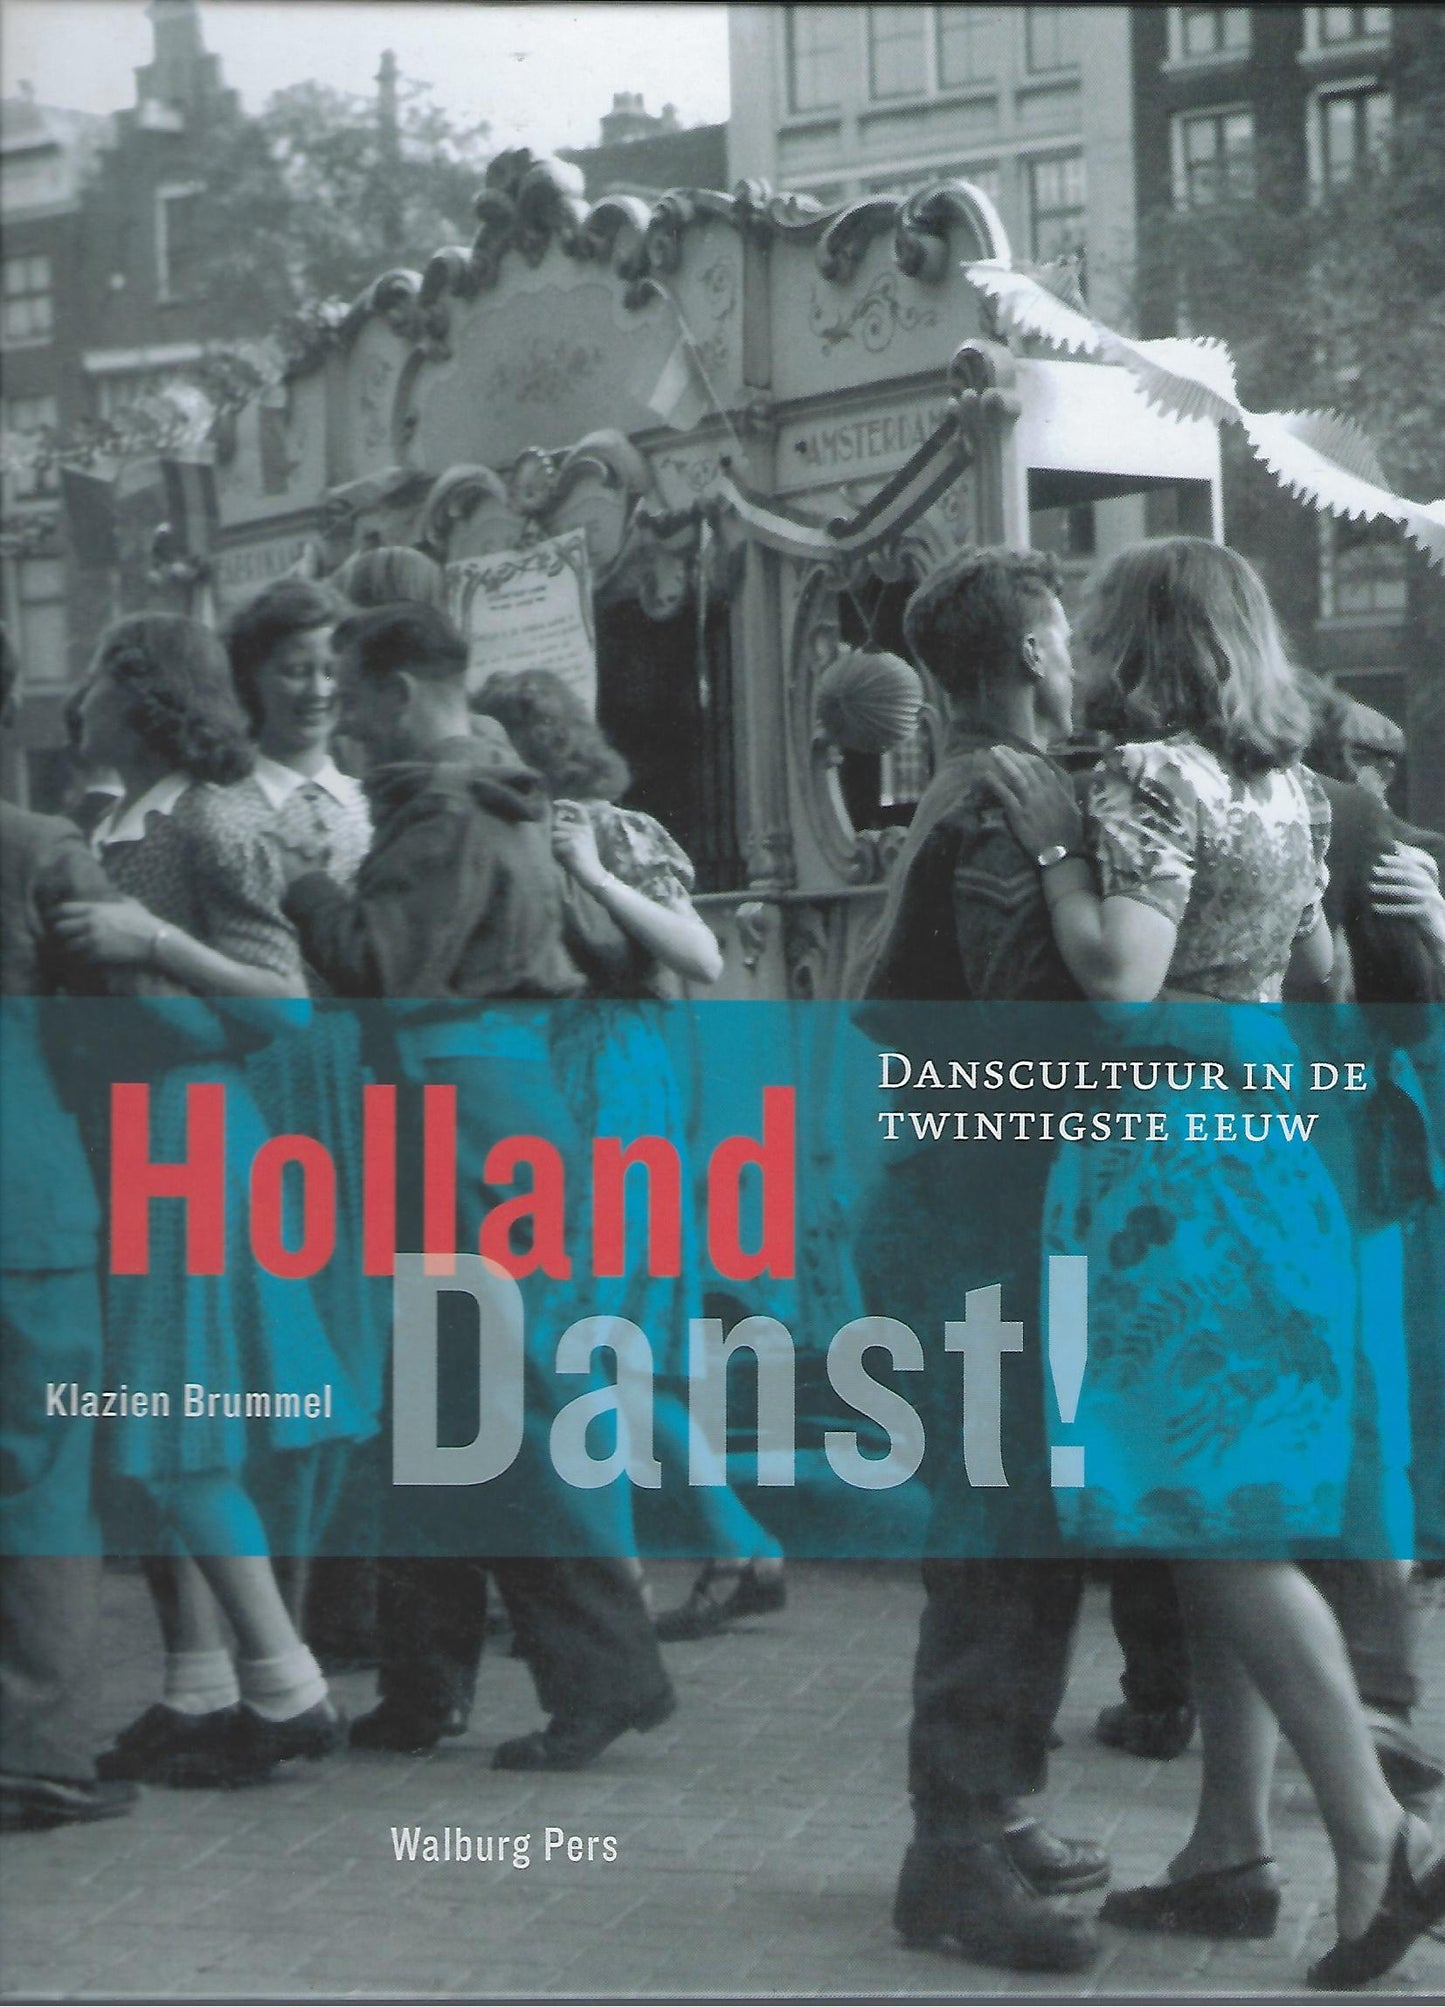 Holland danst ! / danscultuur in de twintigste eeuw